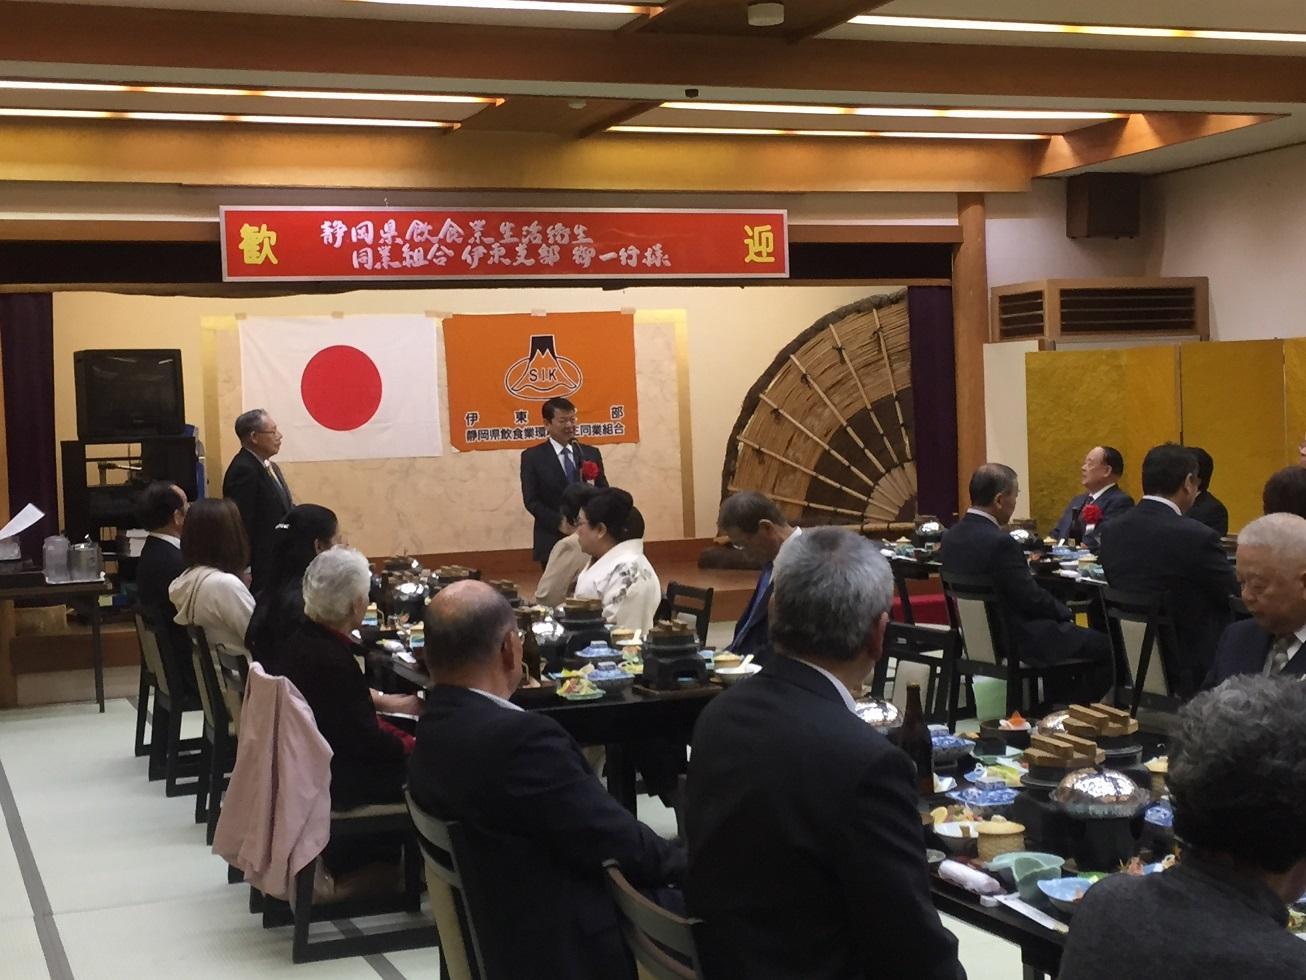 伊東ガーデンで開催された静岡県飲食業生活衛生同業組合の懇親会に出席した伊東市長の写真